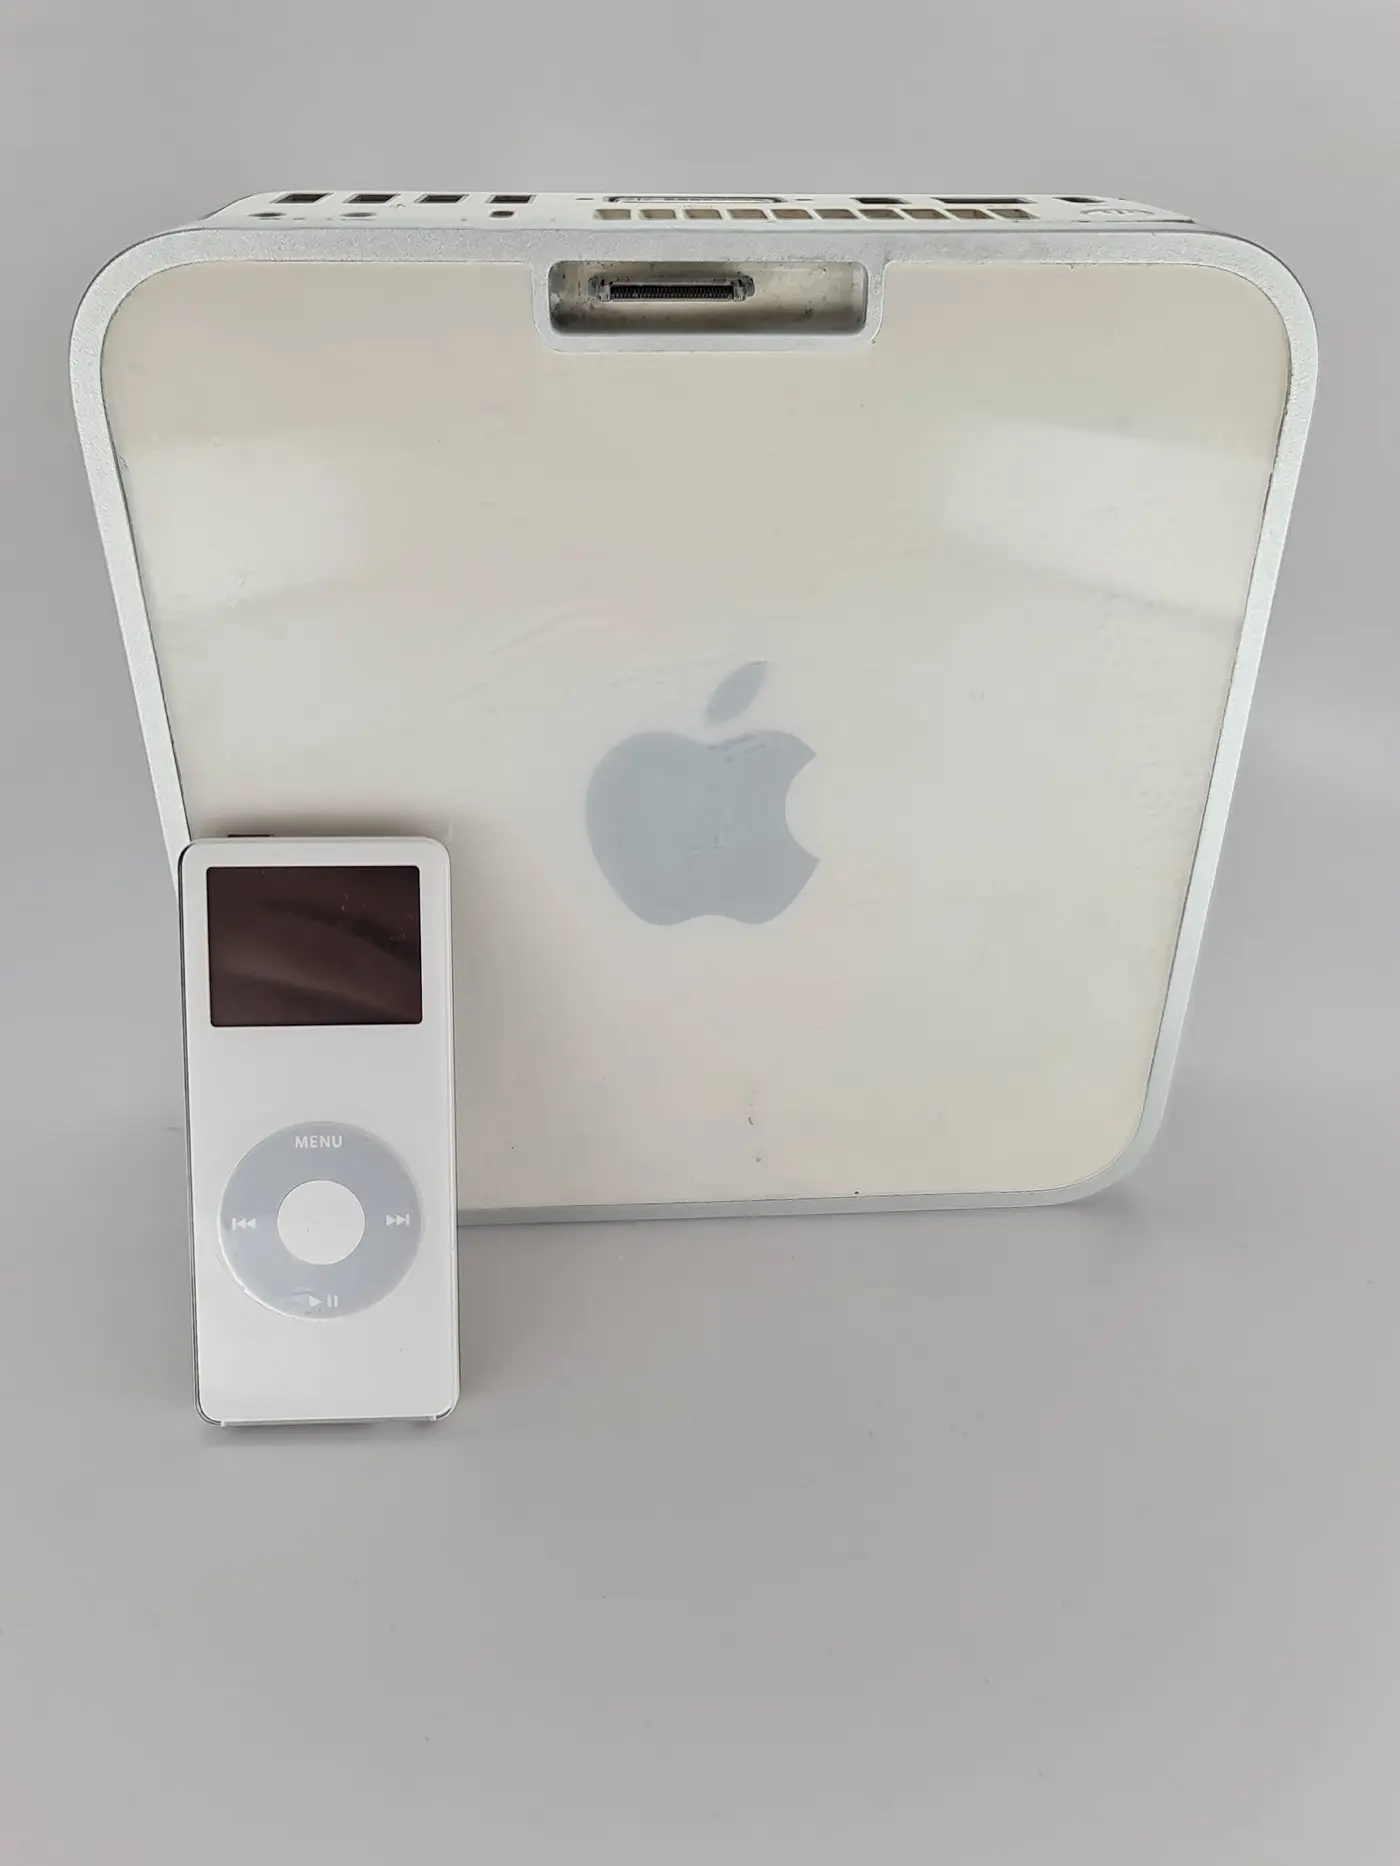 Appleが Mac Mini に Ipod Nano 用ドックを搭載することを検討していた事が明らかに 追記 気になる 記になる